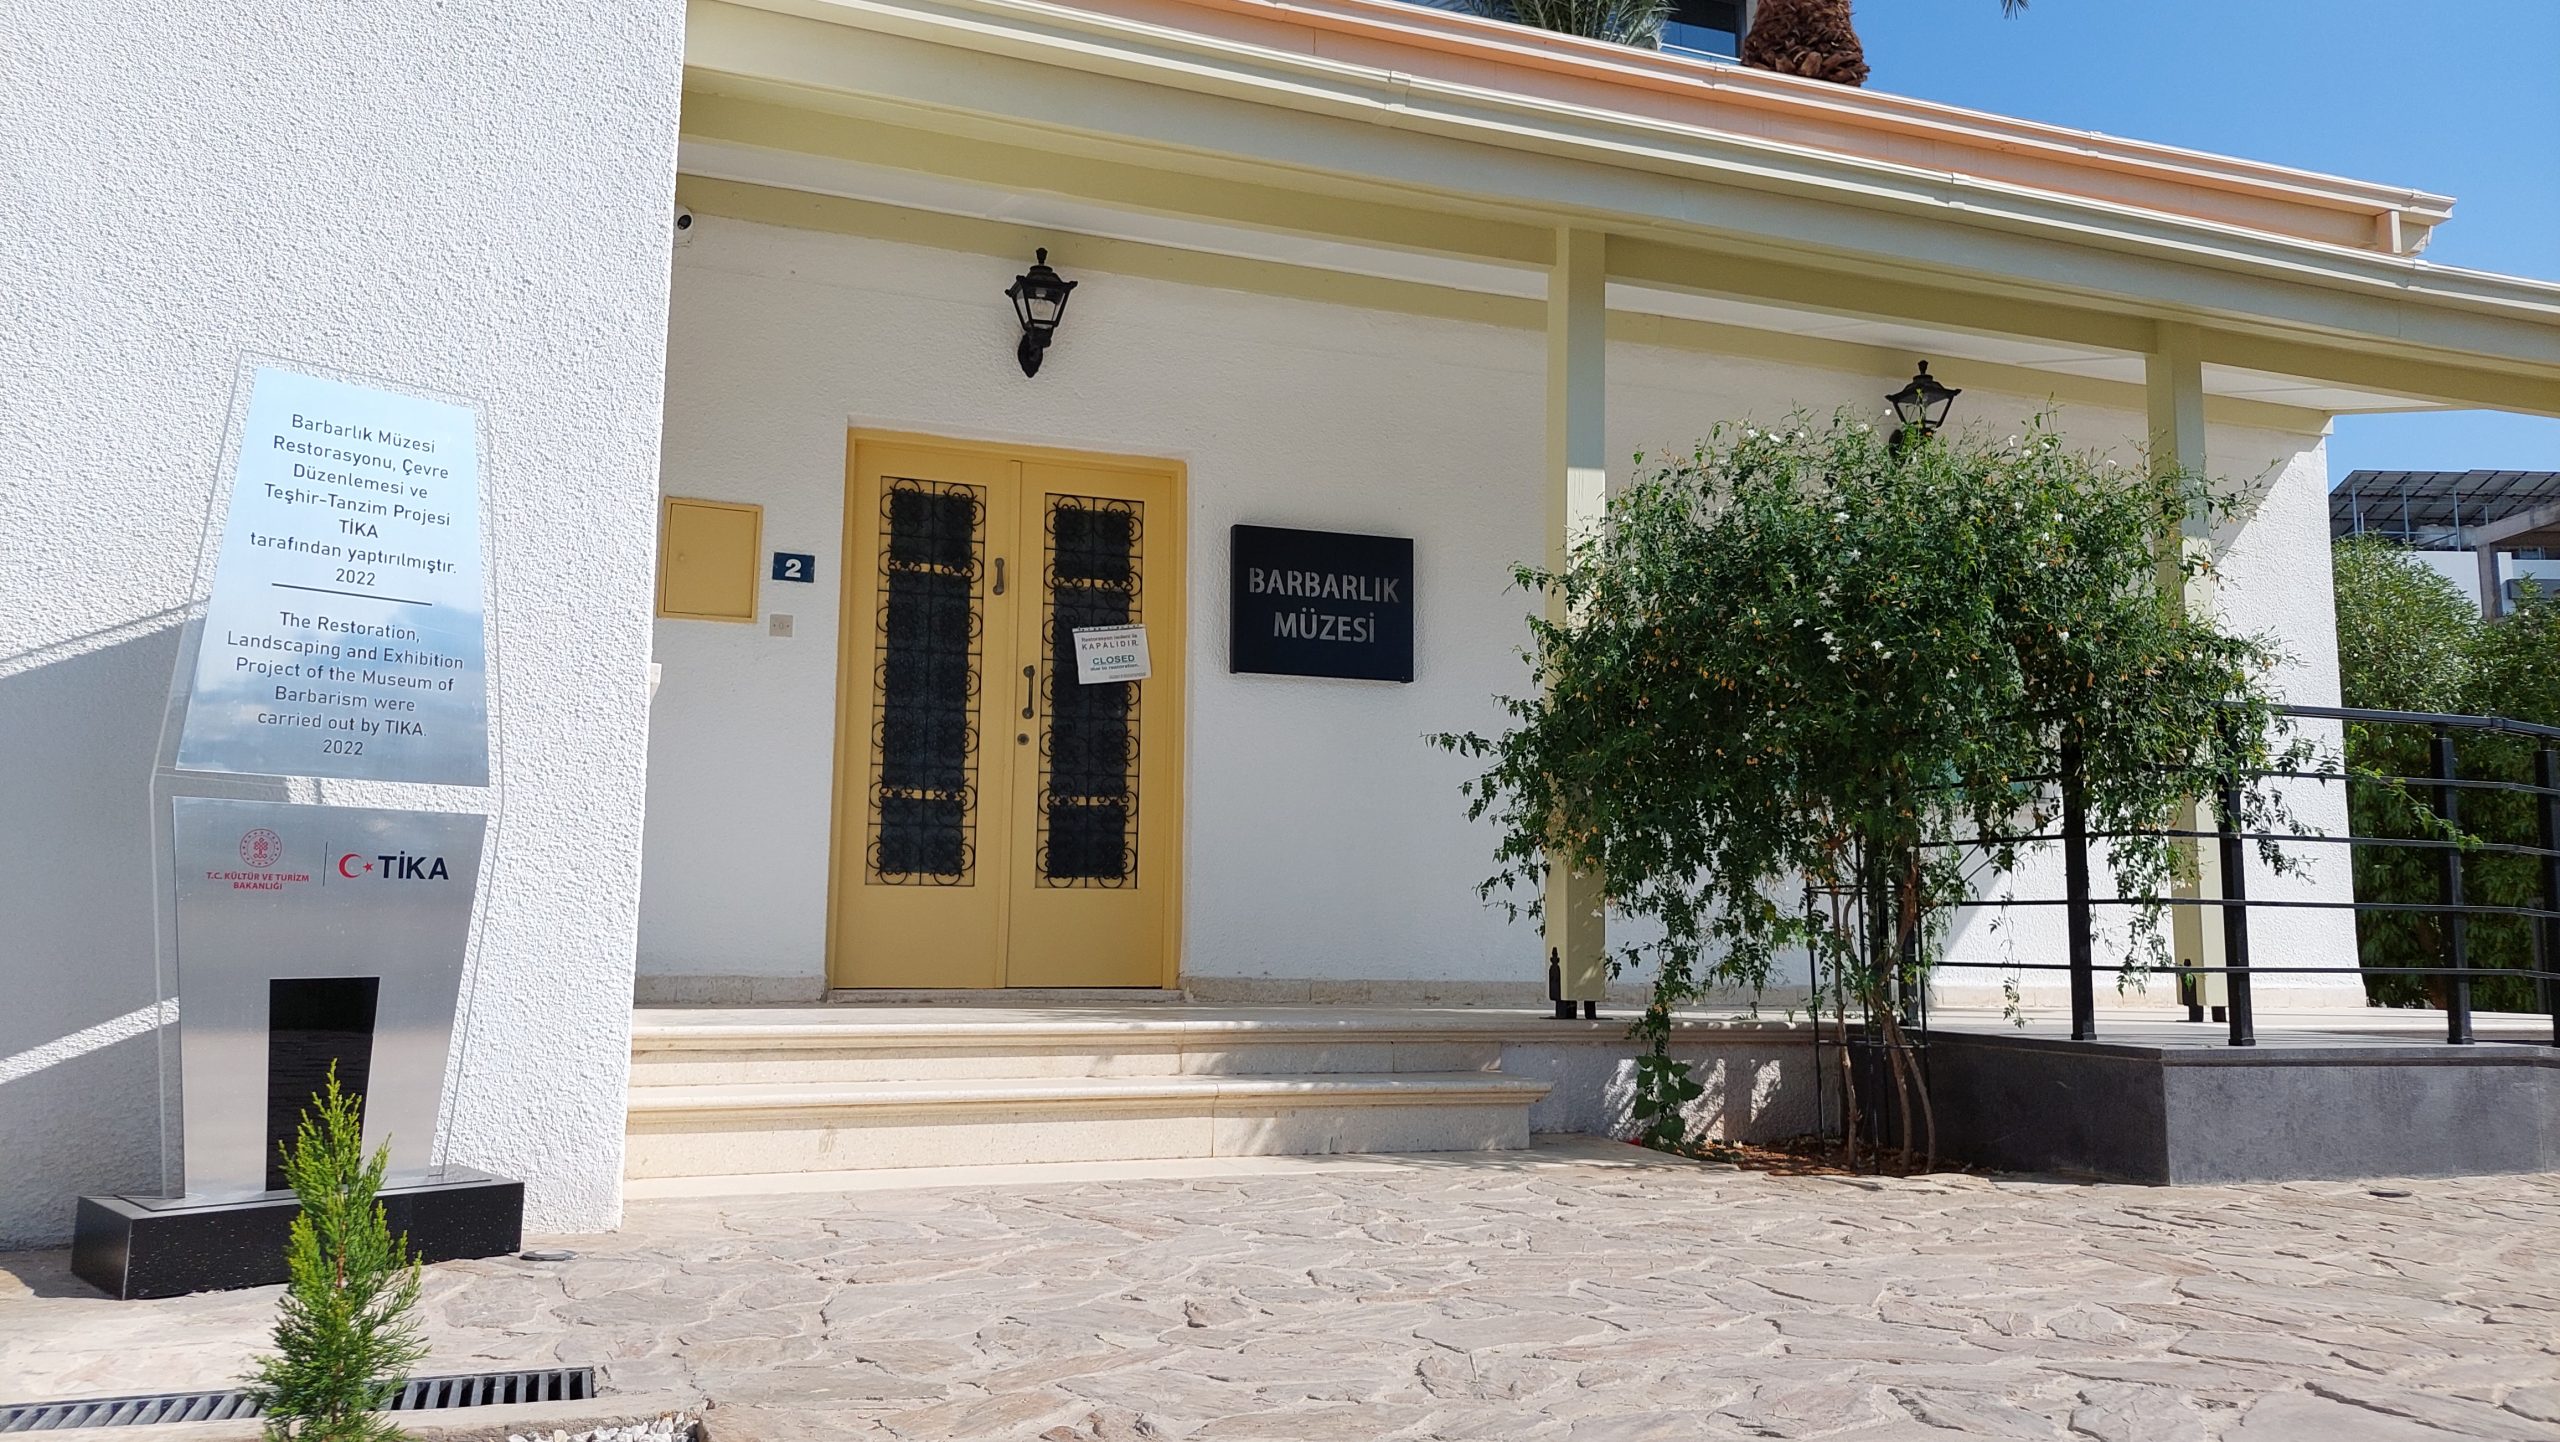 Barbarlık Müzesi restorasyon çalışmalarının ardından yeniden açılıyor